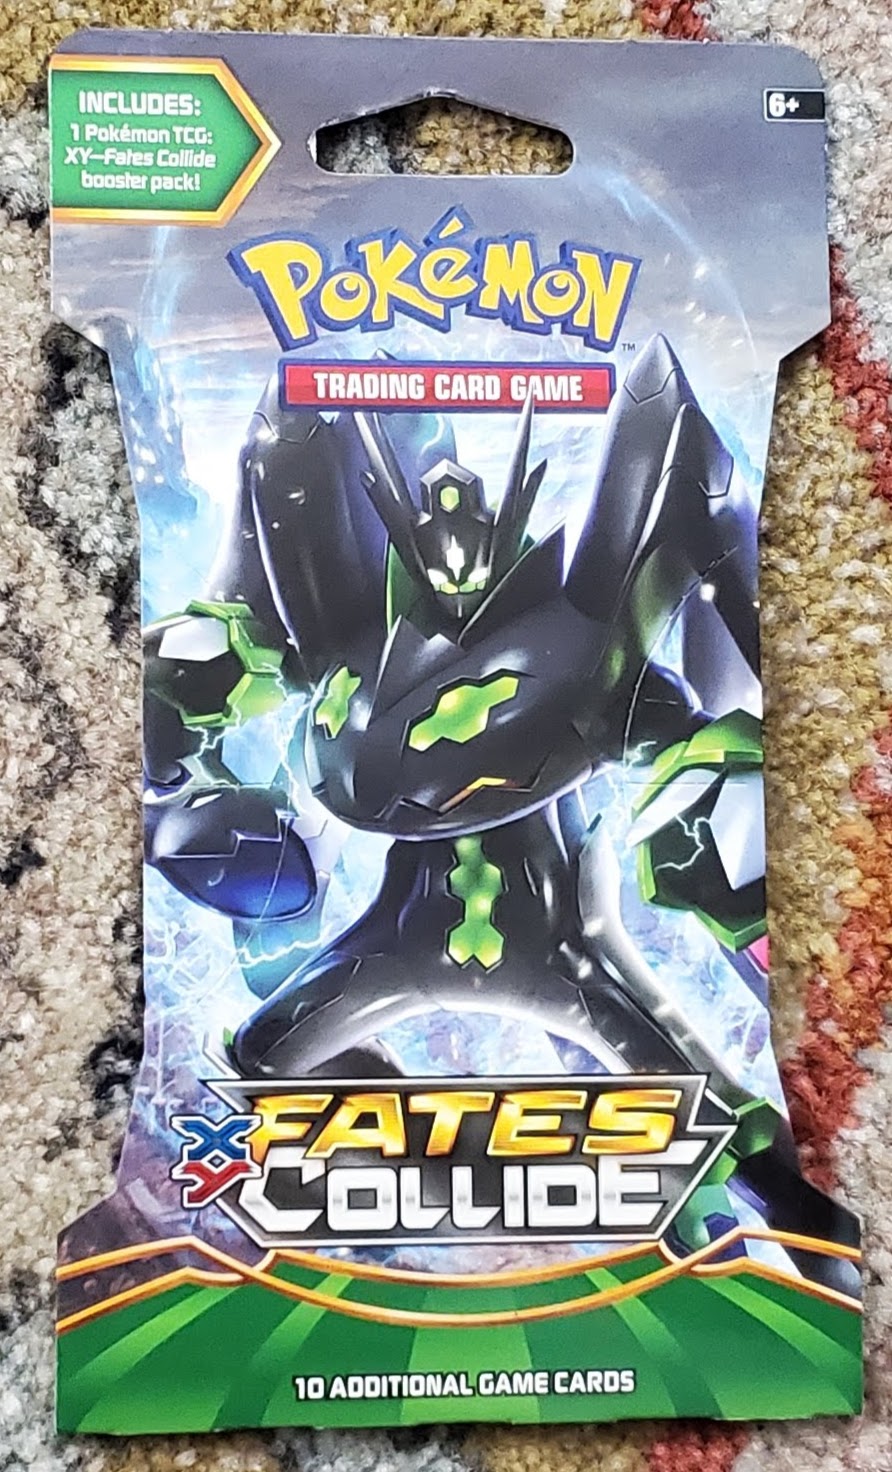 Fates Collide Sleeved Booster Pack Art Bundle [Set of 4] - Sealed Pokémon Cards